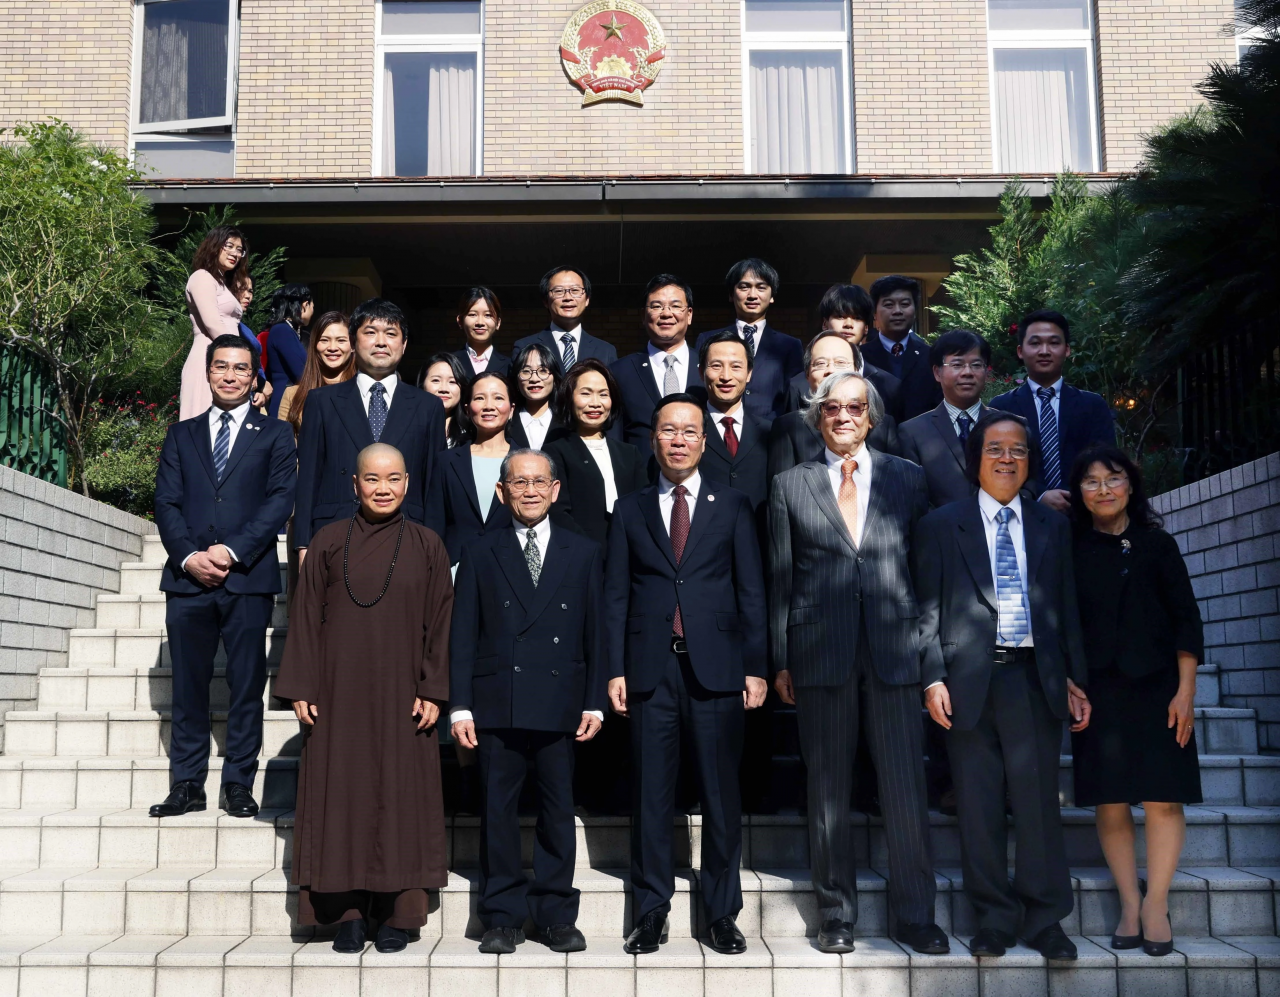 Chủ tịch nước gặp gỡ đại diện các thế hệ người Việt Nam tại Nhật Bản